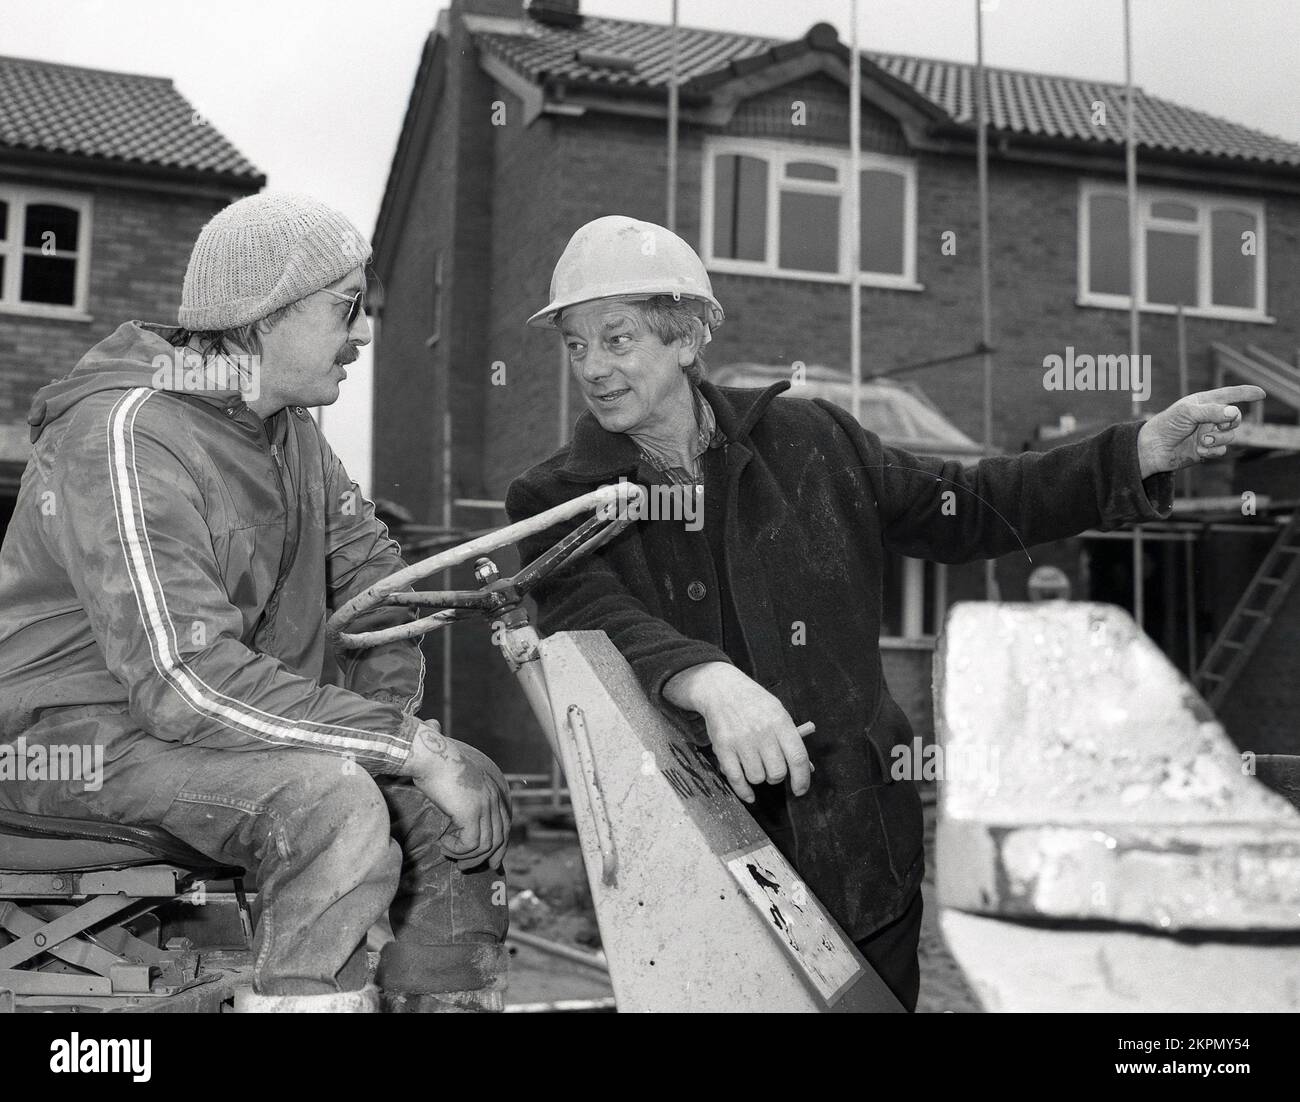 1980s, fuera en un sitio de construcción de una nueva vivienda, un capataz usando casco, dando instrucciones a un trabajador de la construcción usando un sombrero de bolitas y anorak, que está en un dumper de punta, un vehículo de construcción que es un tipo de camión de dumper, Inglaterra, Reino Unido. Foto de stock